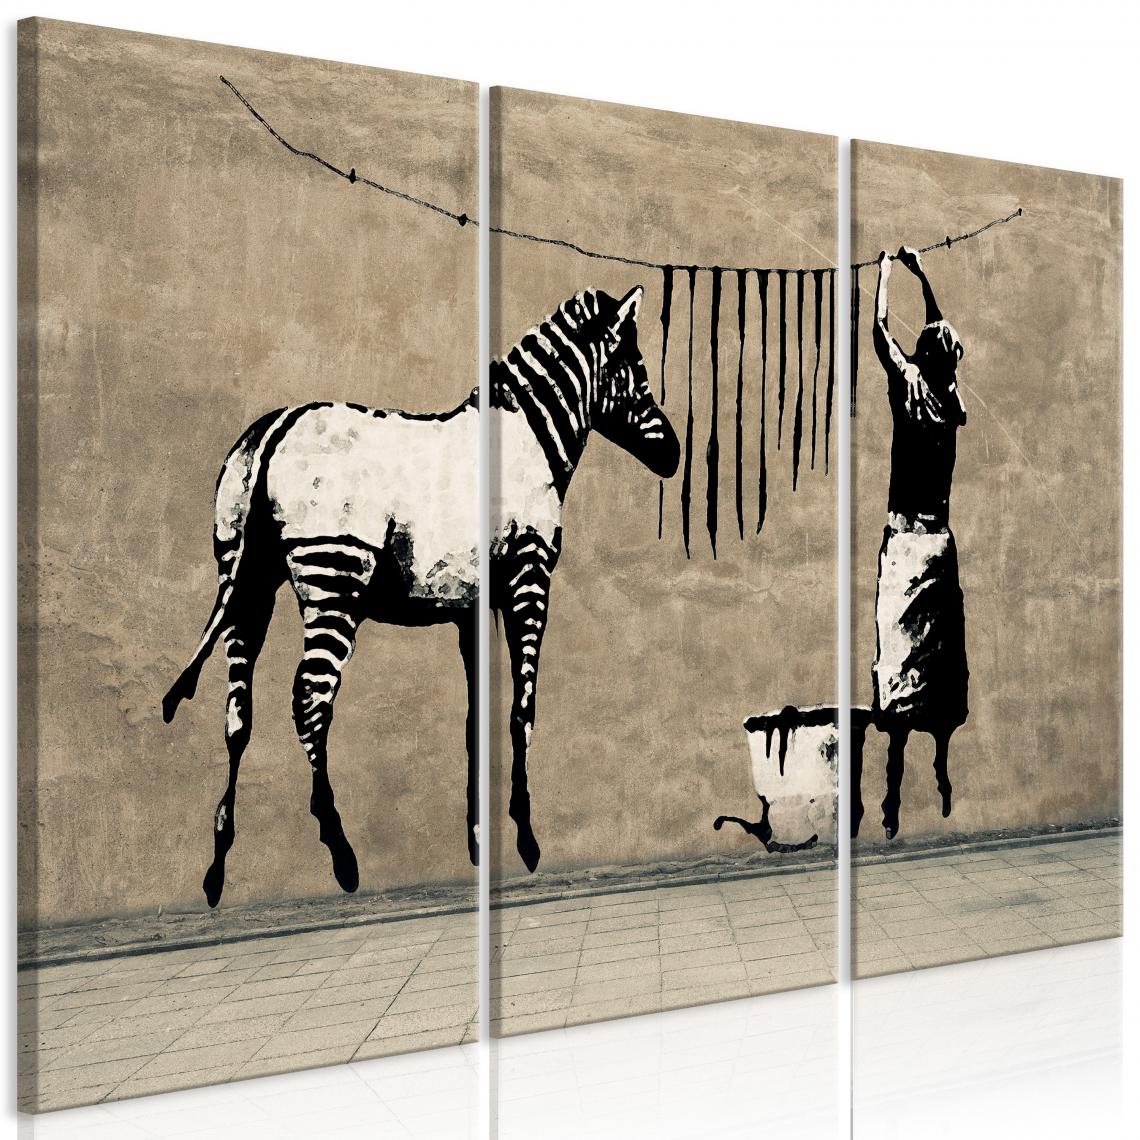 Decoshop26 - Tableau sur toile en 3 panneaux décoration murale image imprimée cadre en bois à suspendre Banksy: Laver le zèbre sur du béton (3 parties) 120x80 cm 11_0003702 - Tableaux, peintures